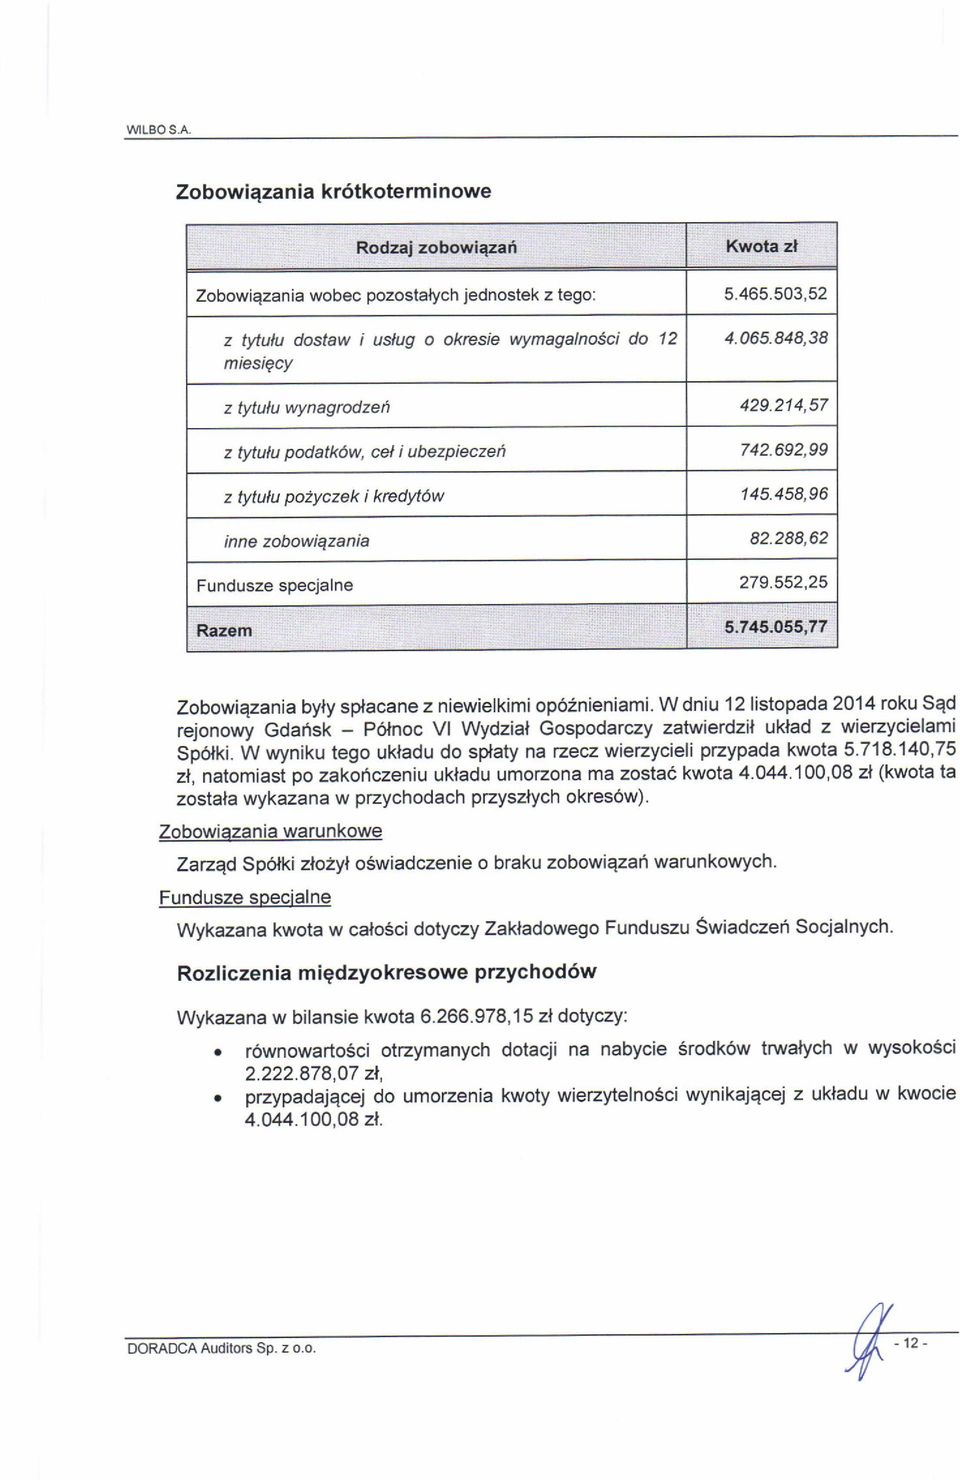 552,25 zobowiqzania byly splacane z niewielkimi op62nieniami. w dniu 12 listopada 2014 roku sqd rejonowy Gdarisk - Polnoc vl wydzial Gospodarczy zatv,rietdzil uklad z wierzycielami Sp6lki.